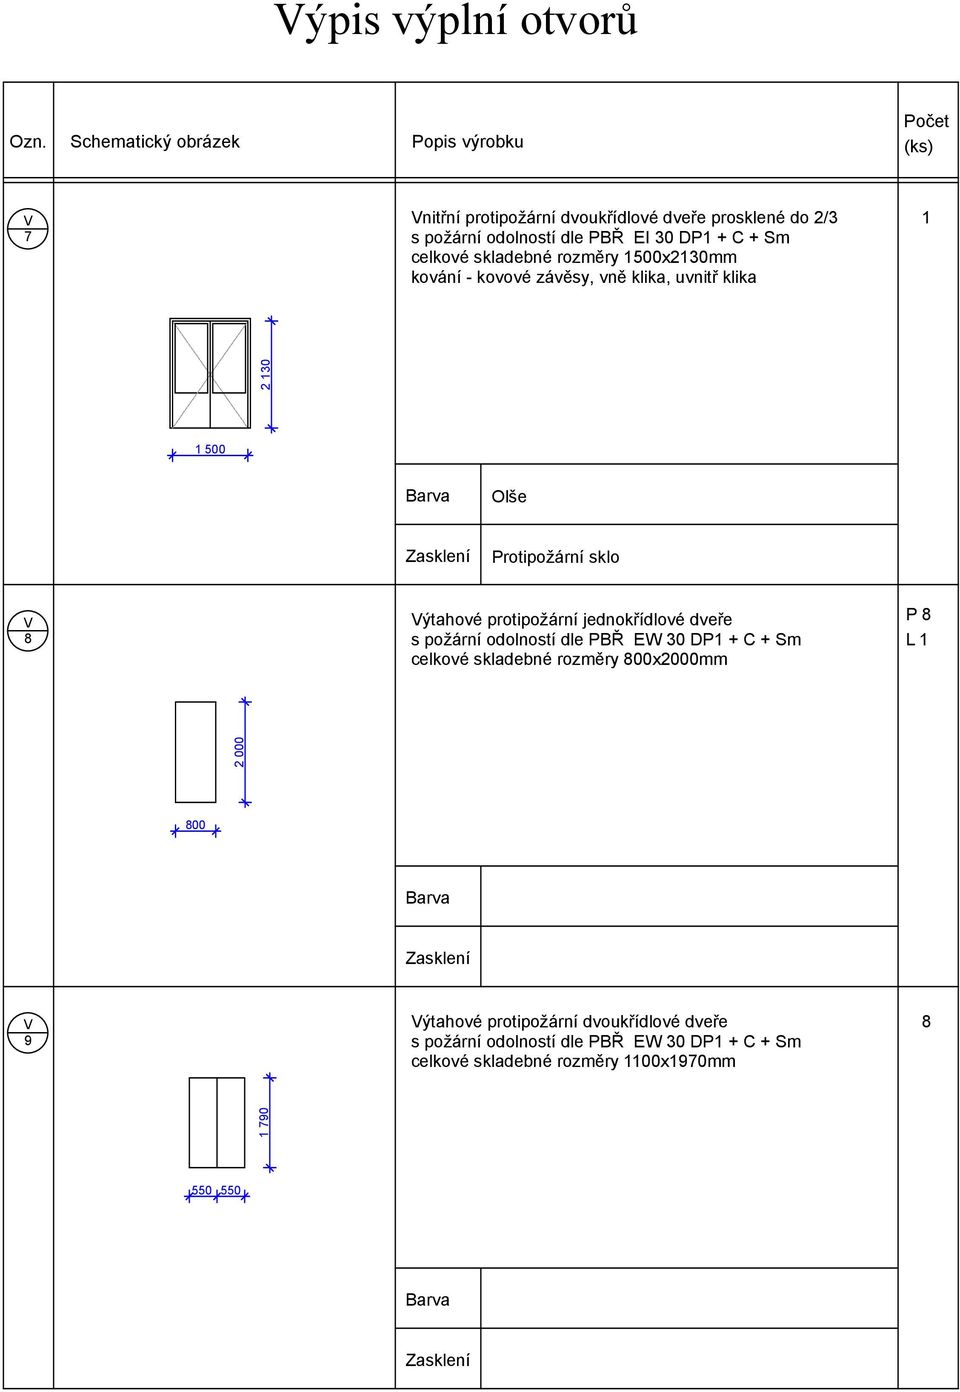 ýtahové protipožární jednokřídlové dveře s požární odolností dle PBŘ EW 30 DP + C + Sm celkové skladebné rozměry x2000mm P 8